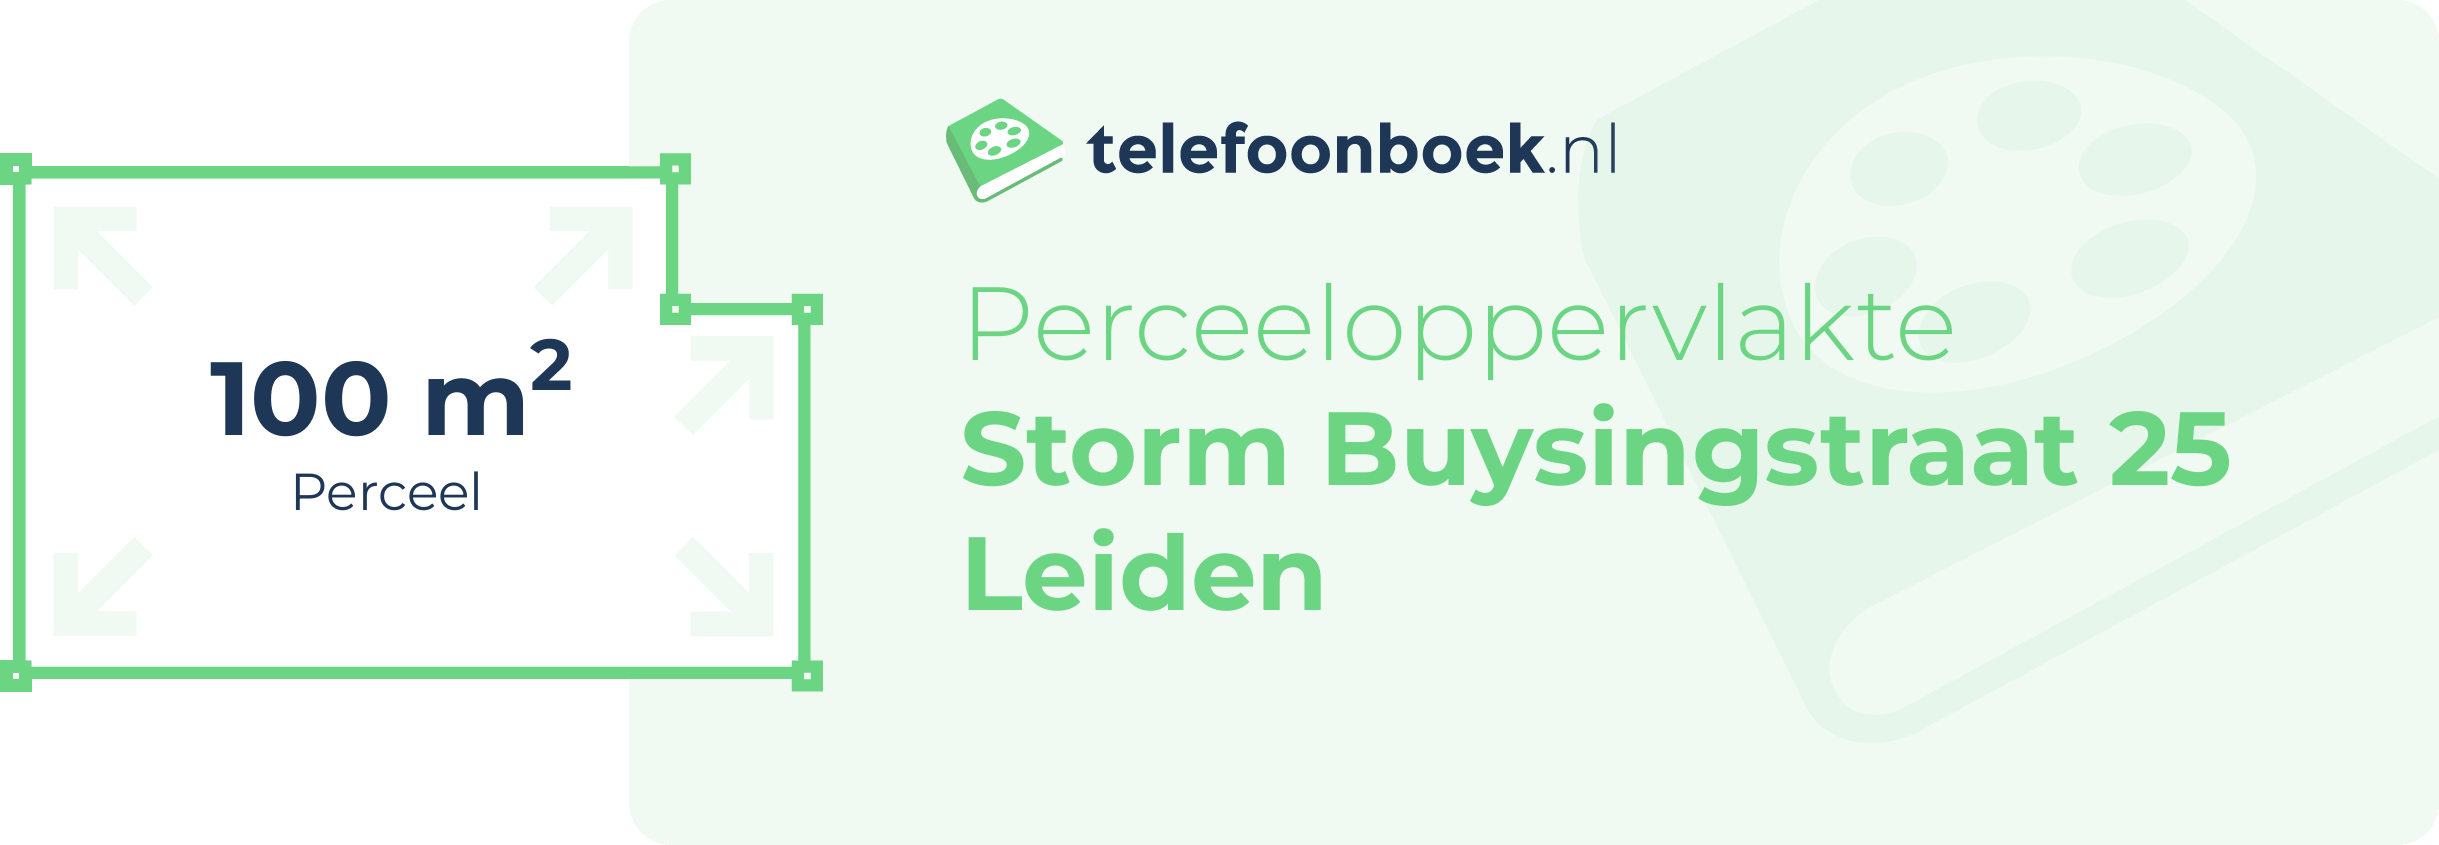 Perceeloppervlakte Storm Buysingstraat 25 Leiden